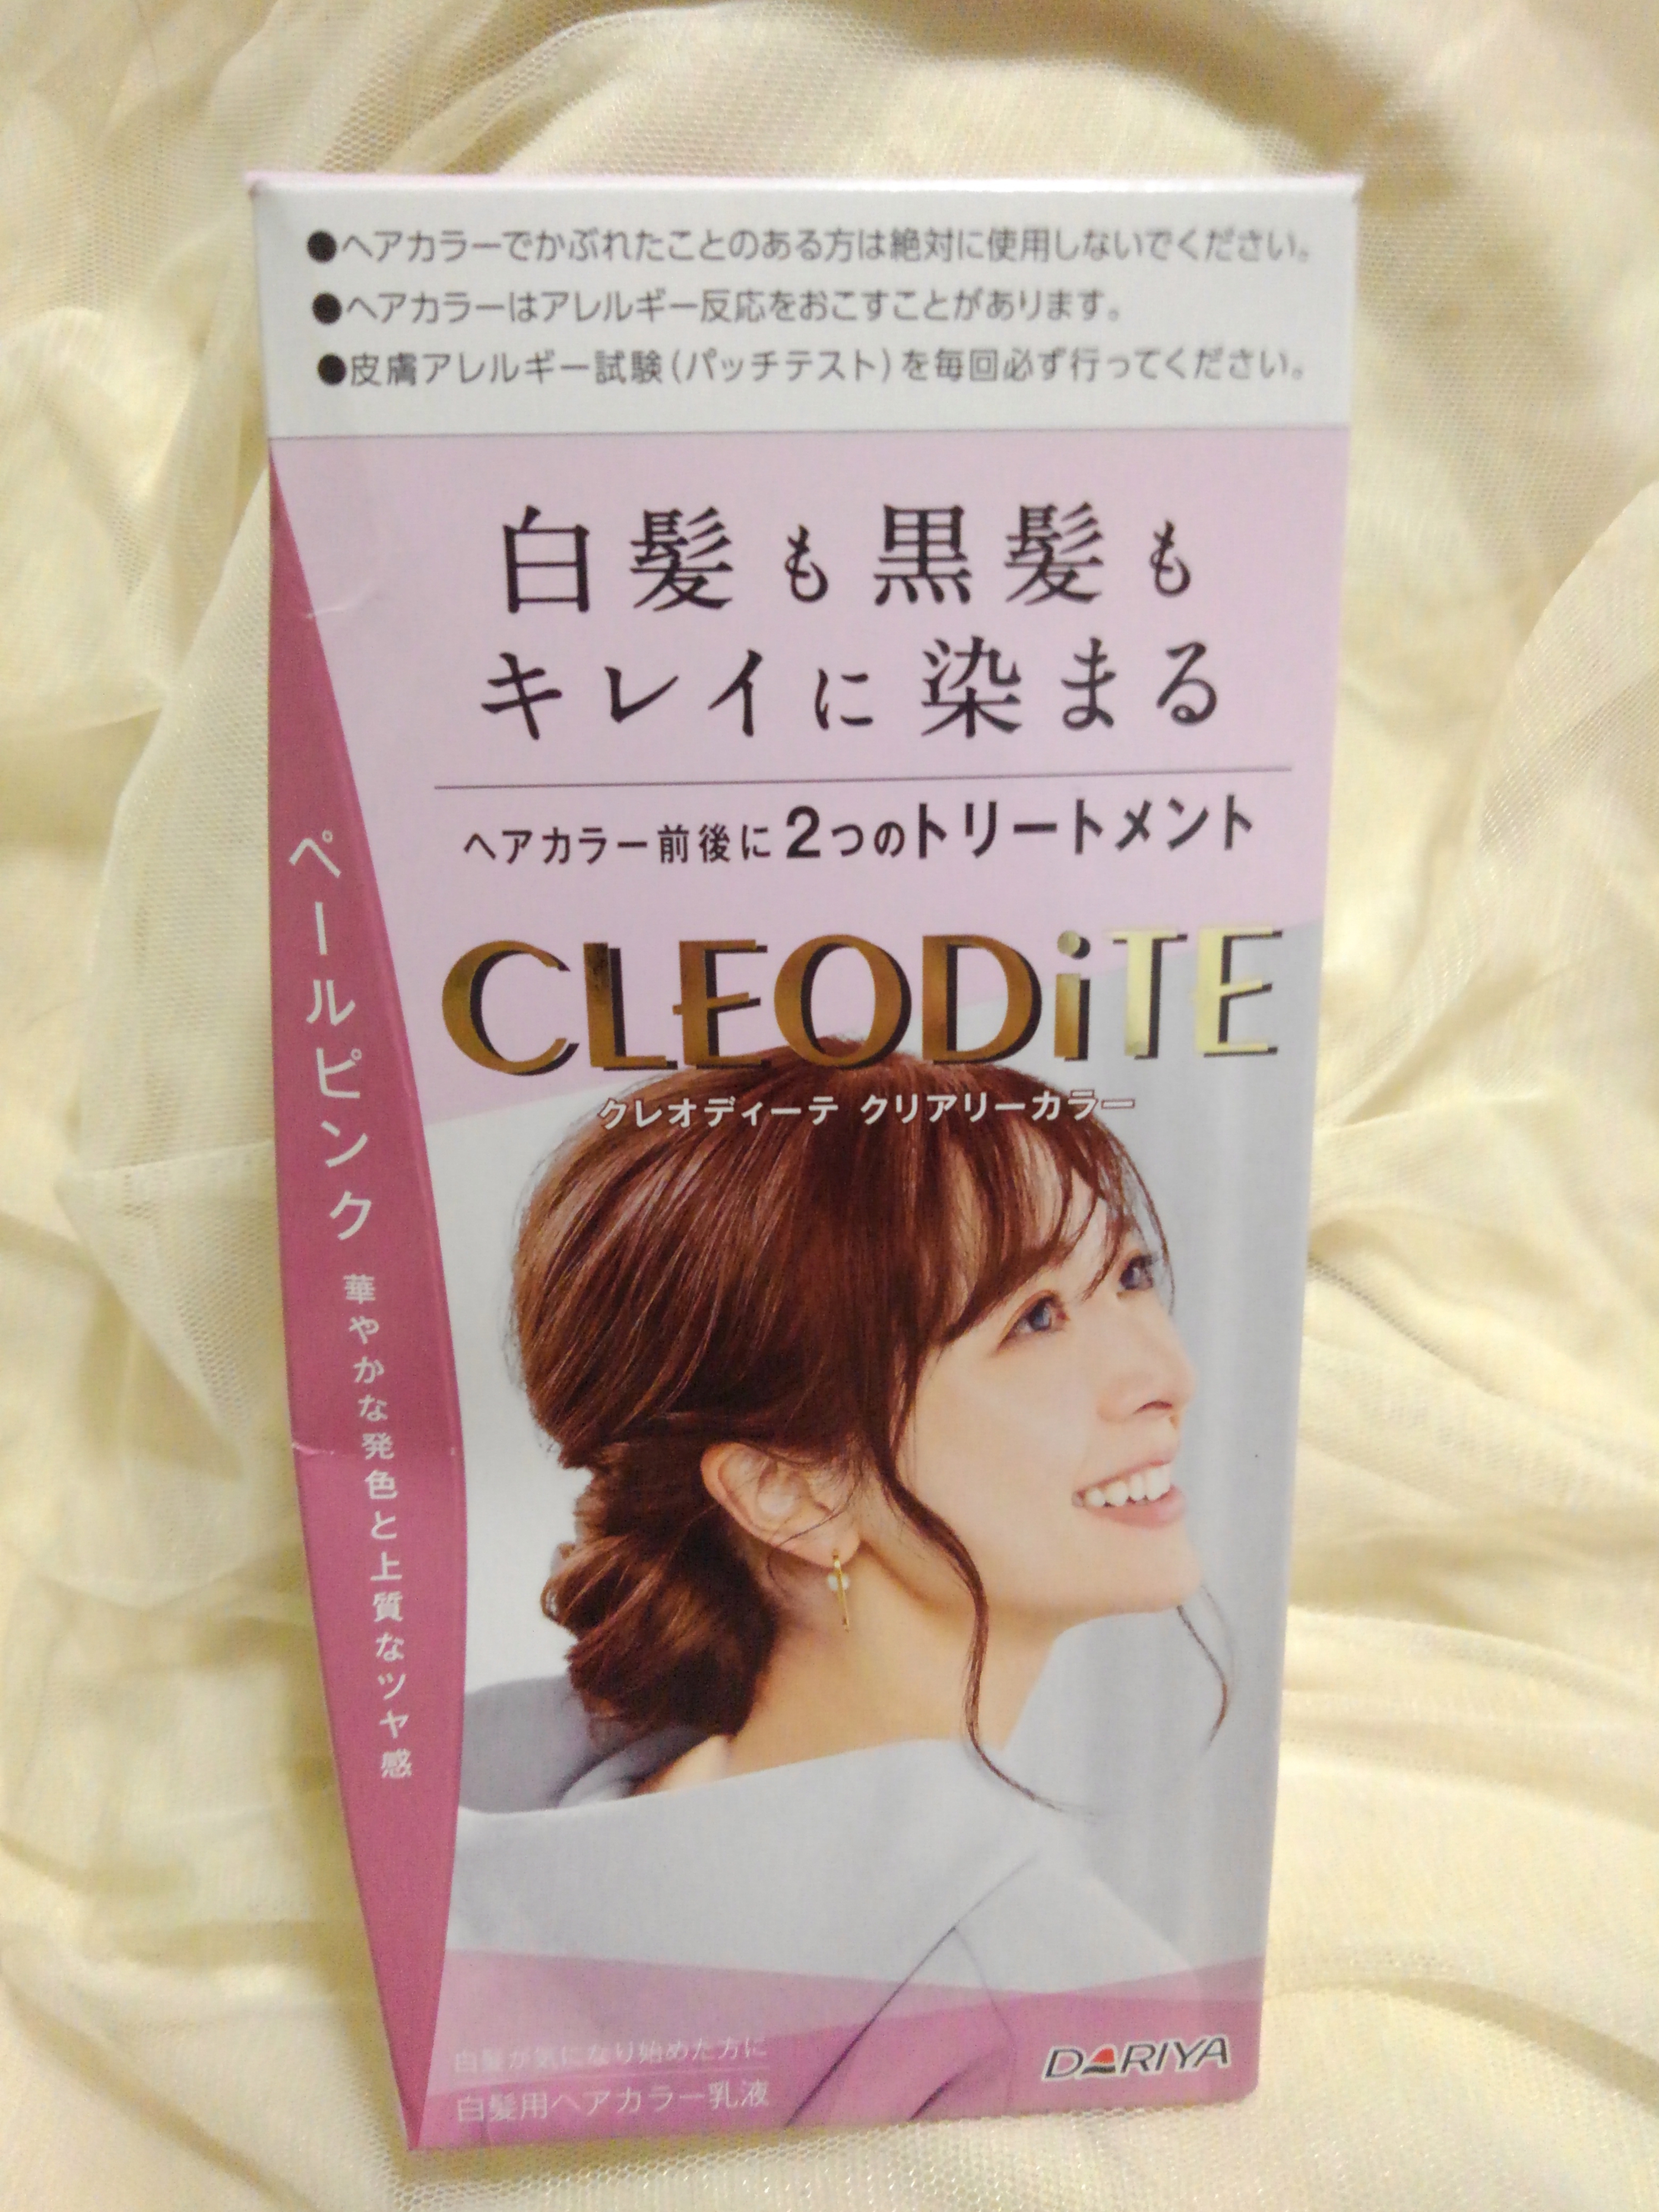 CLEODiTE(クレオディーテ) クリアリーカラー 白髪用を使ったバドママ★さんのクチコミ画像1